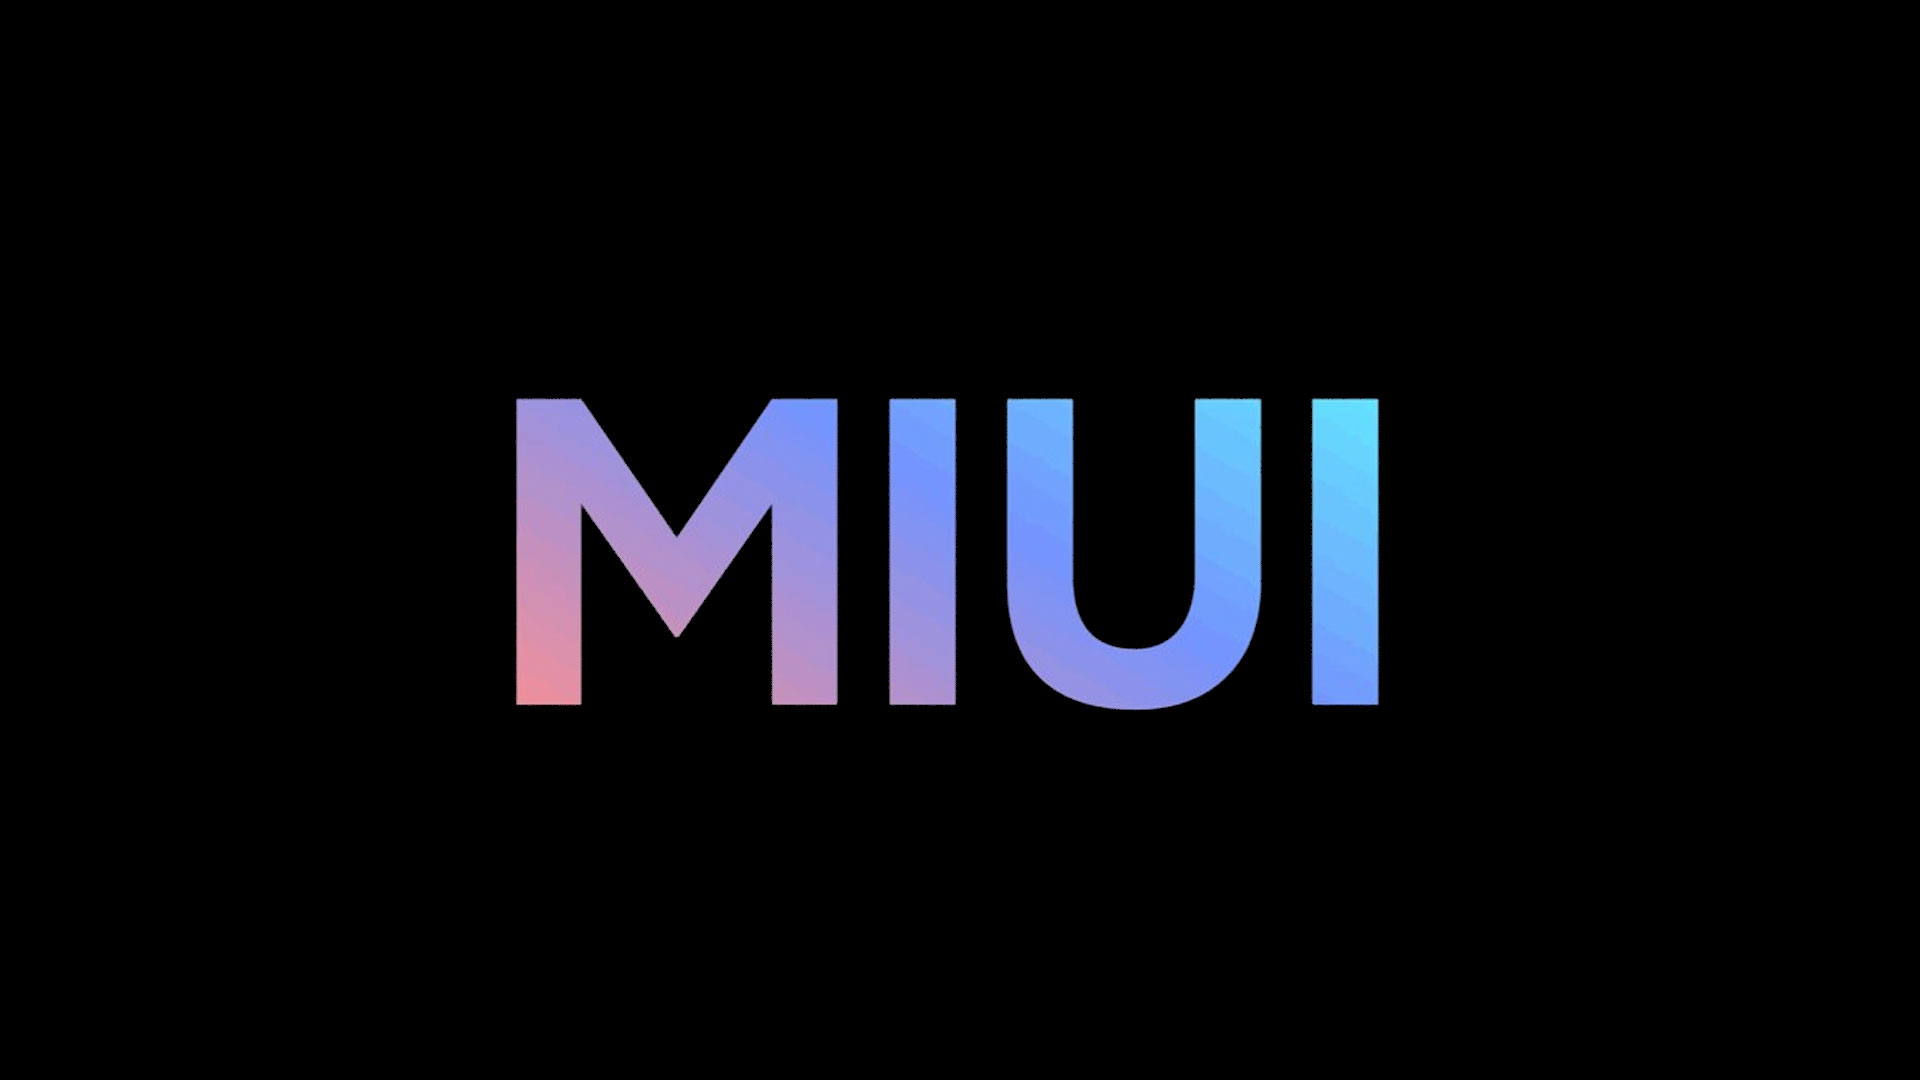 Кількість щомісячних користувачів MIUI перевищила 600 млн осіб - за півтора року аудиторія зросла на 100 млн